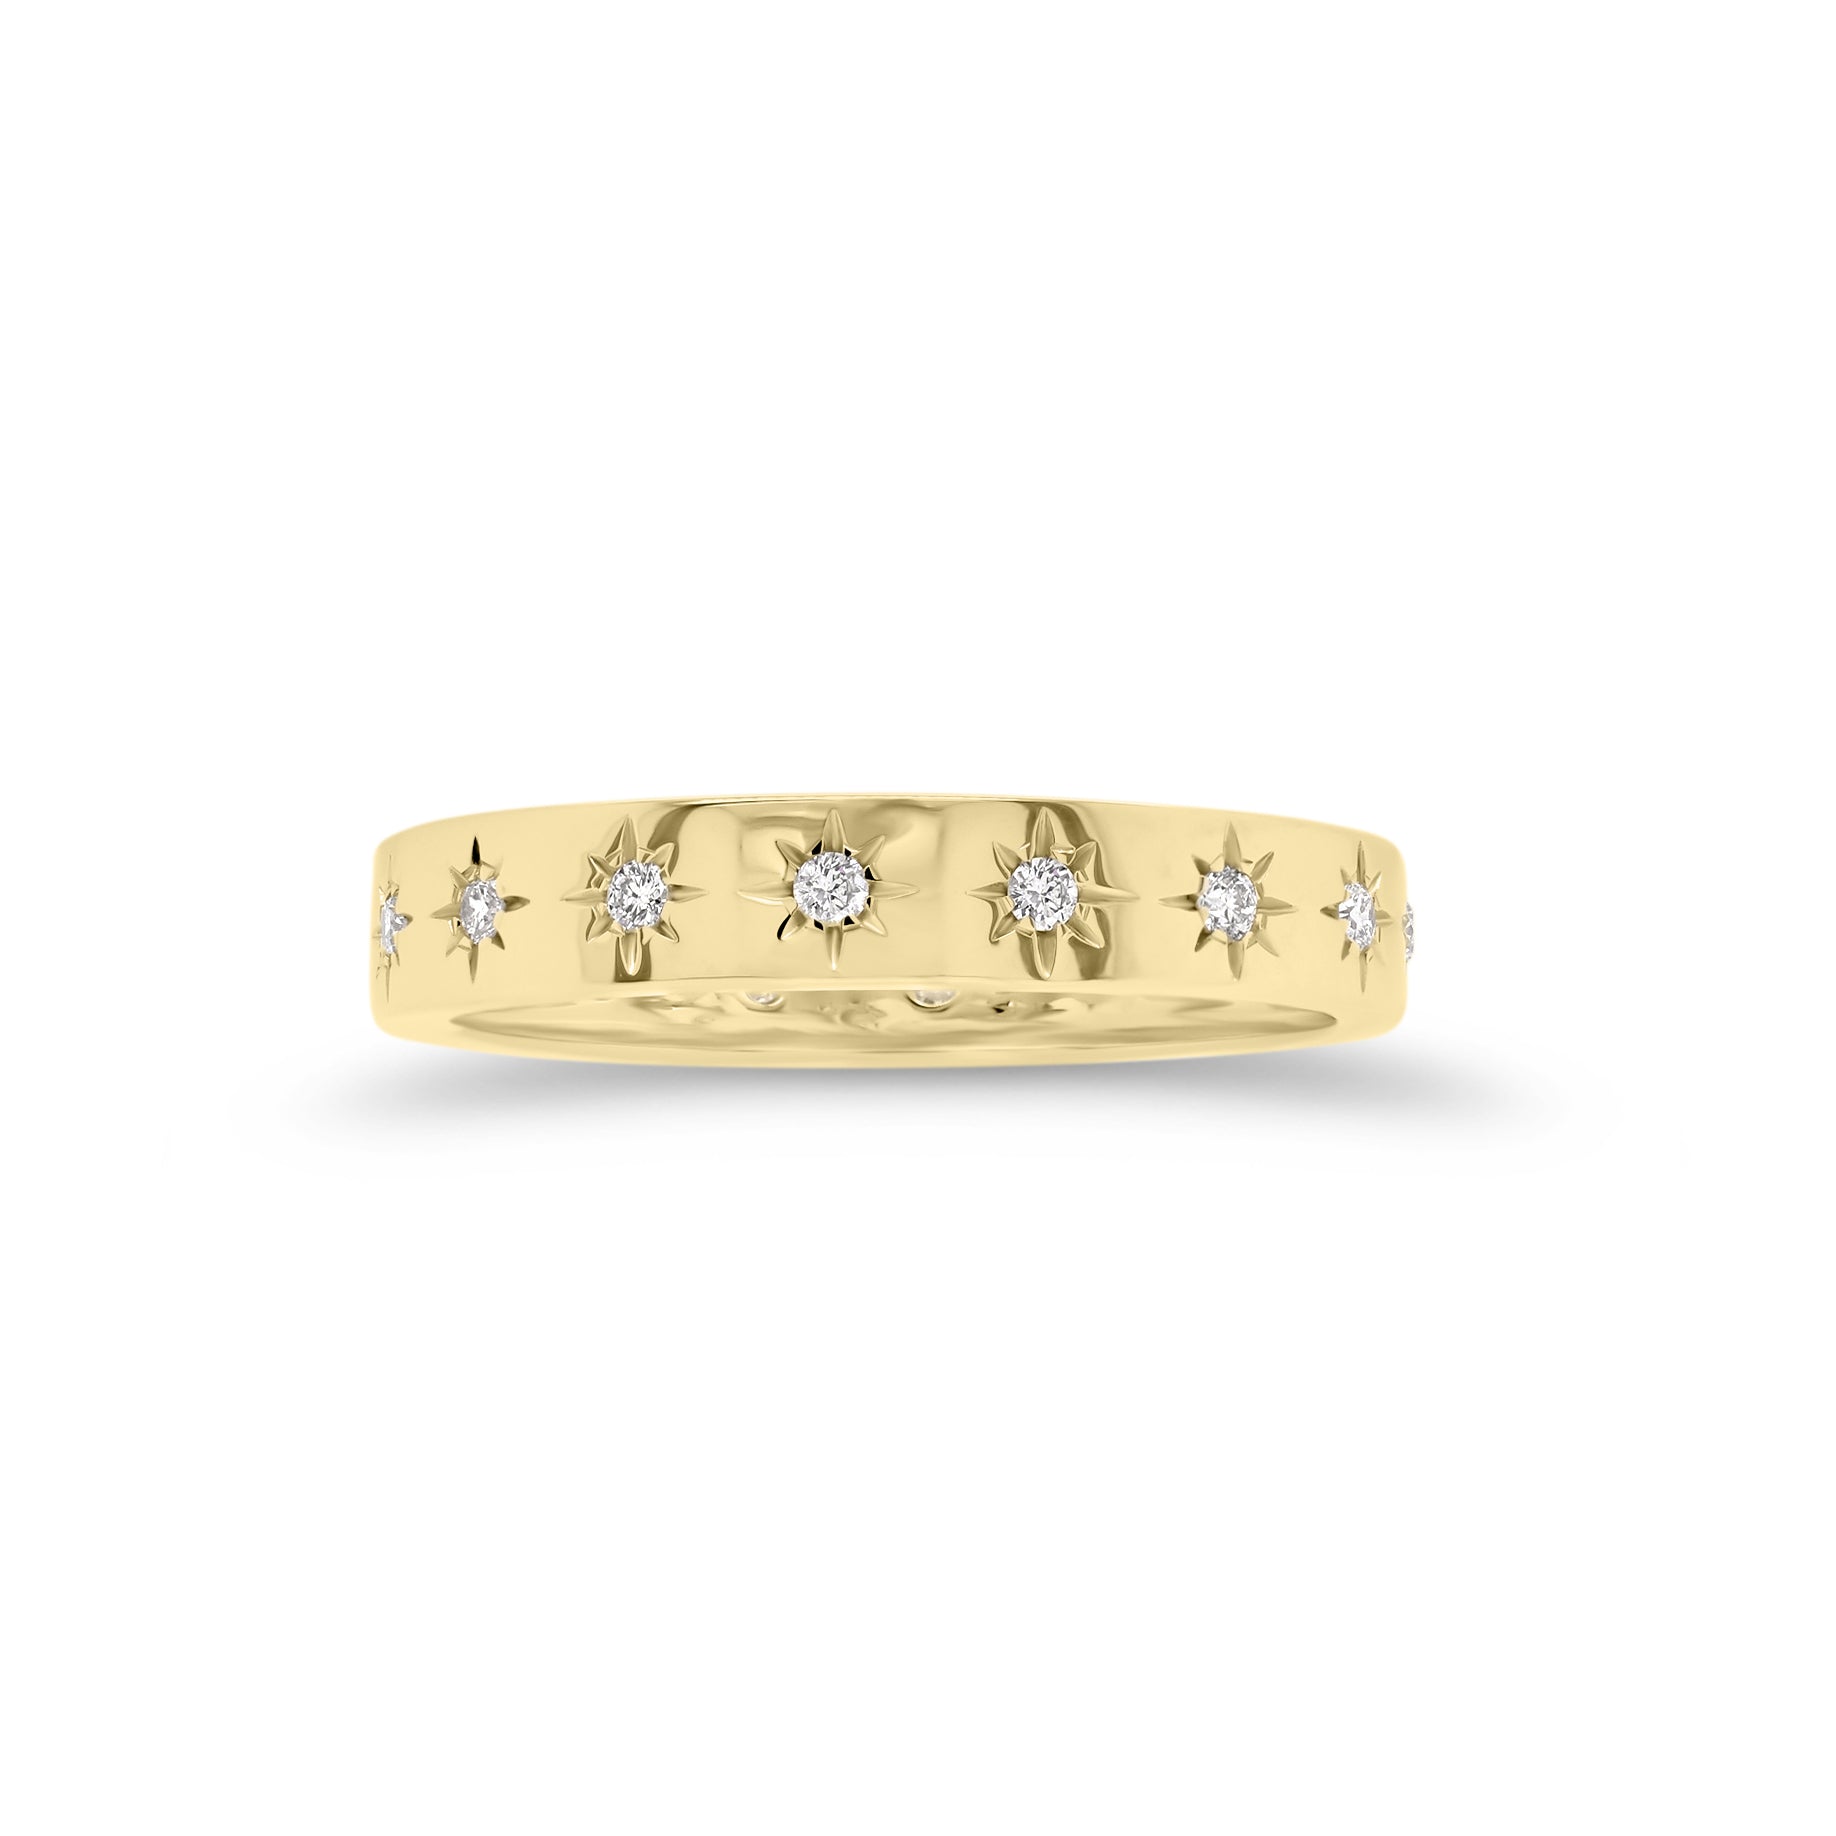 Diamond Starburst Stackable Ring  - 14K gold weighing 2.05 grams  - 16 round diamonds totaling 0.16 carats